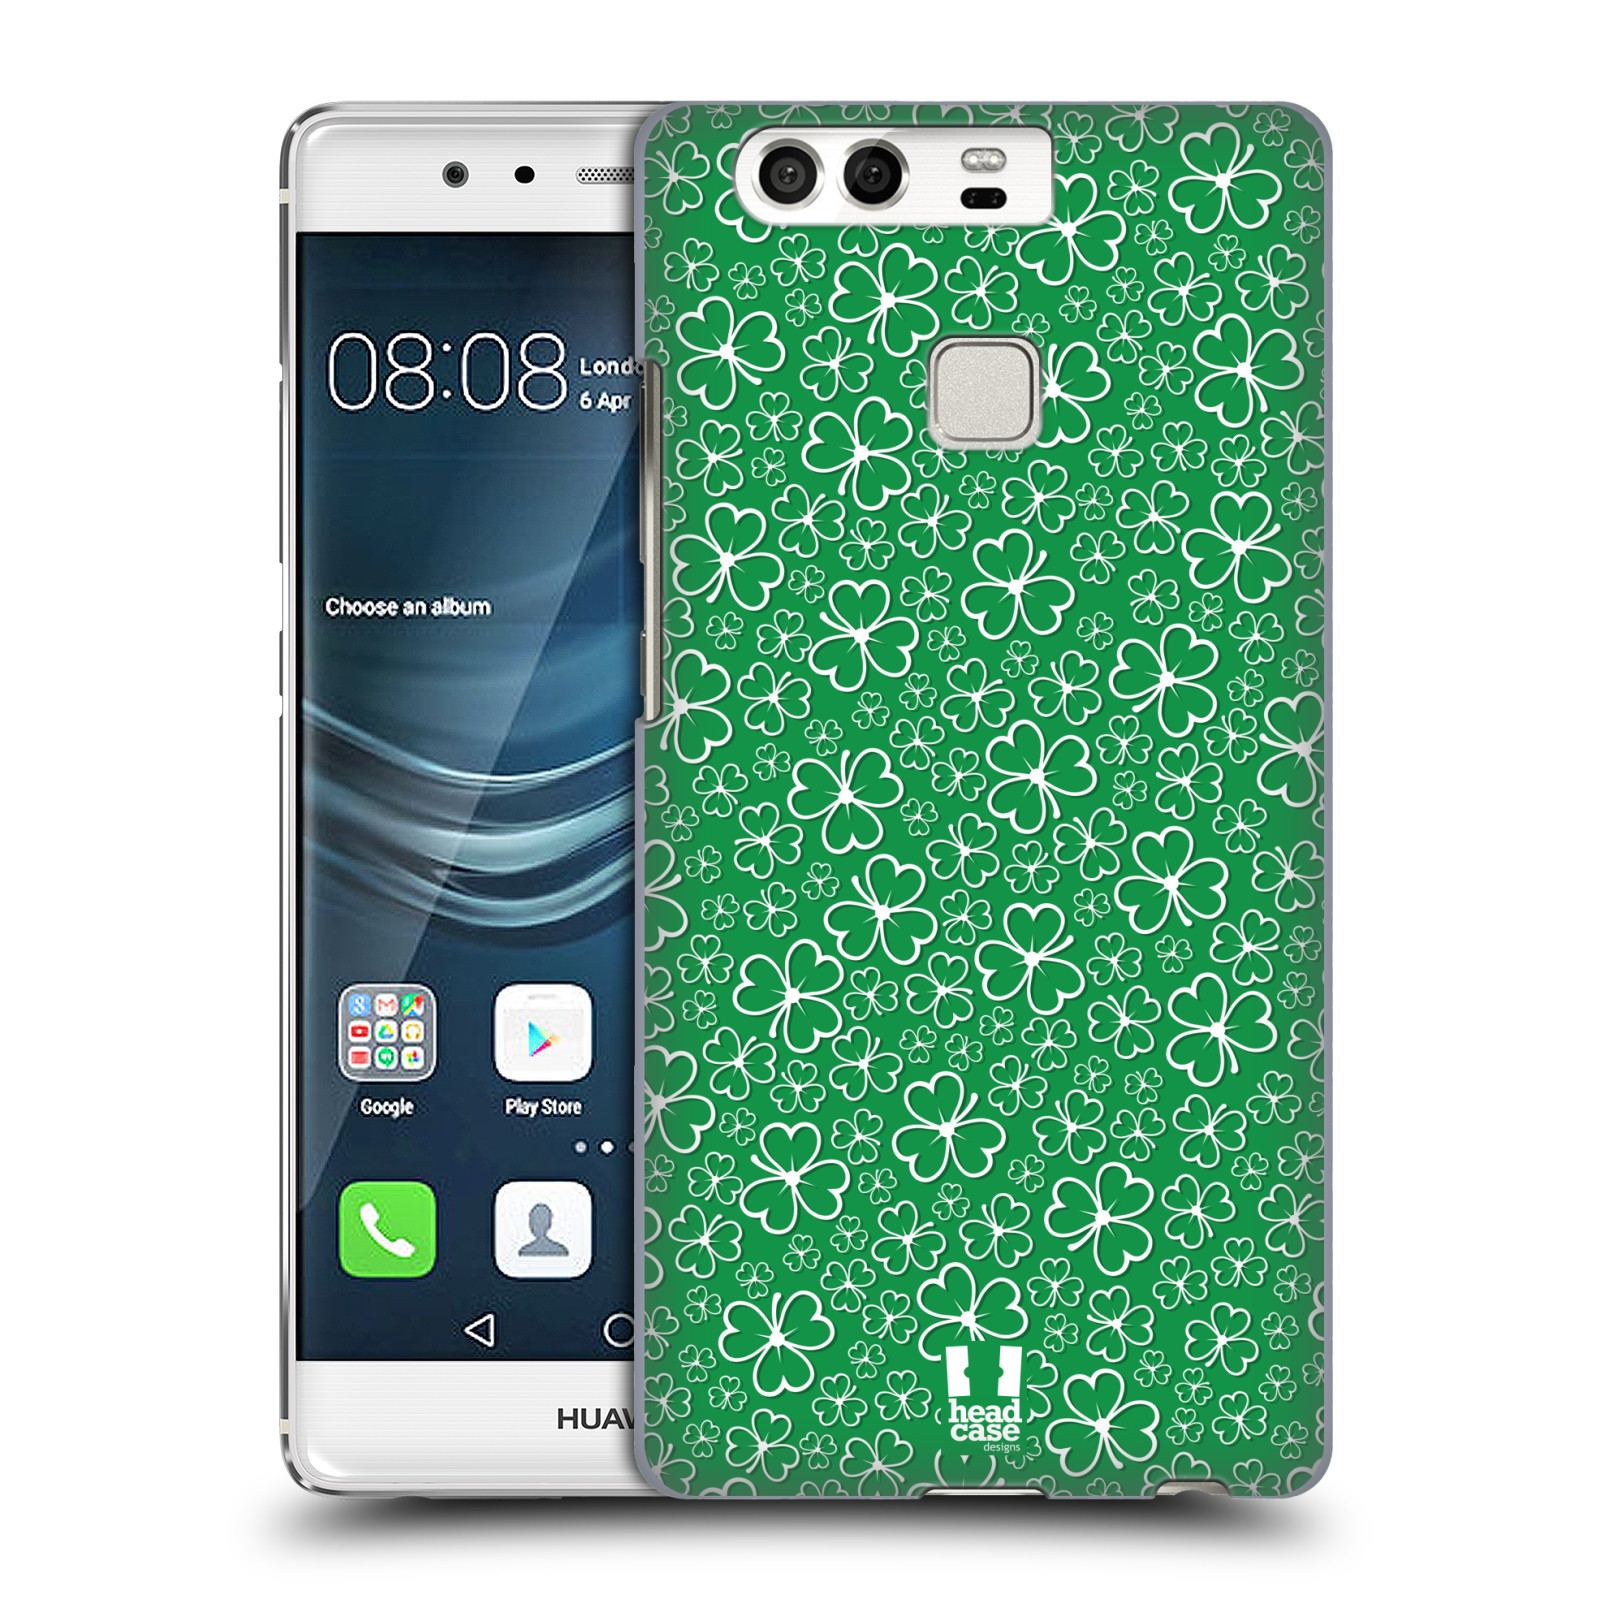 HEAD CASE plastový obal na mobil Huawei P9 / P9 DUAL SIM vzor Kreslený čyřlístek zelená HROMADA